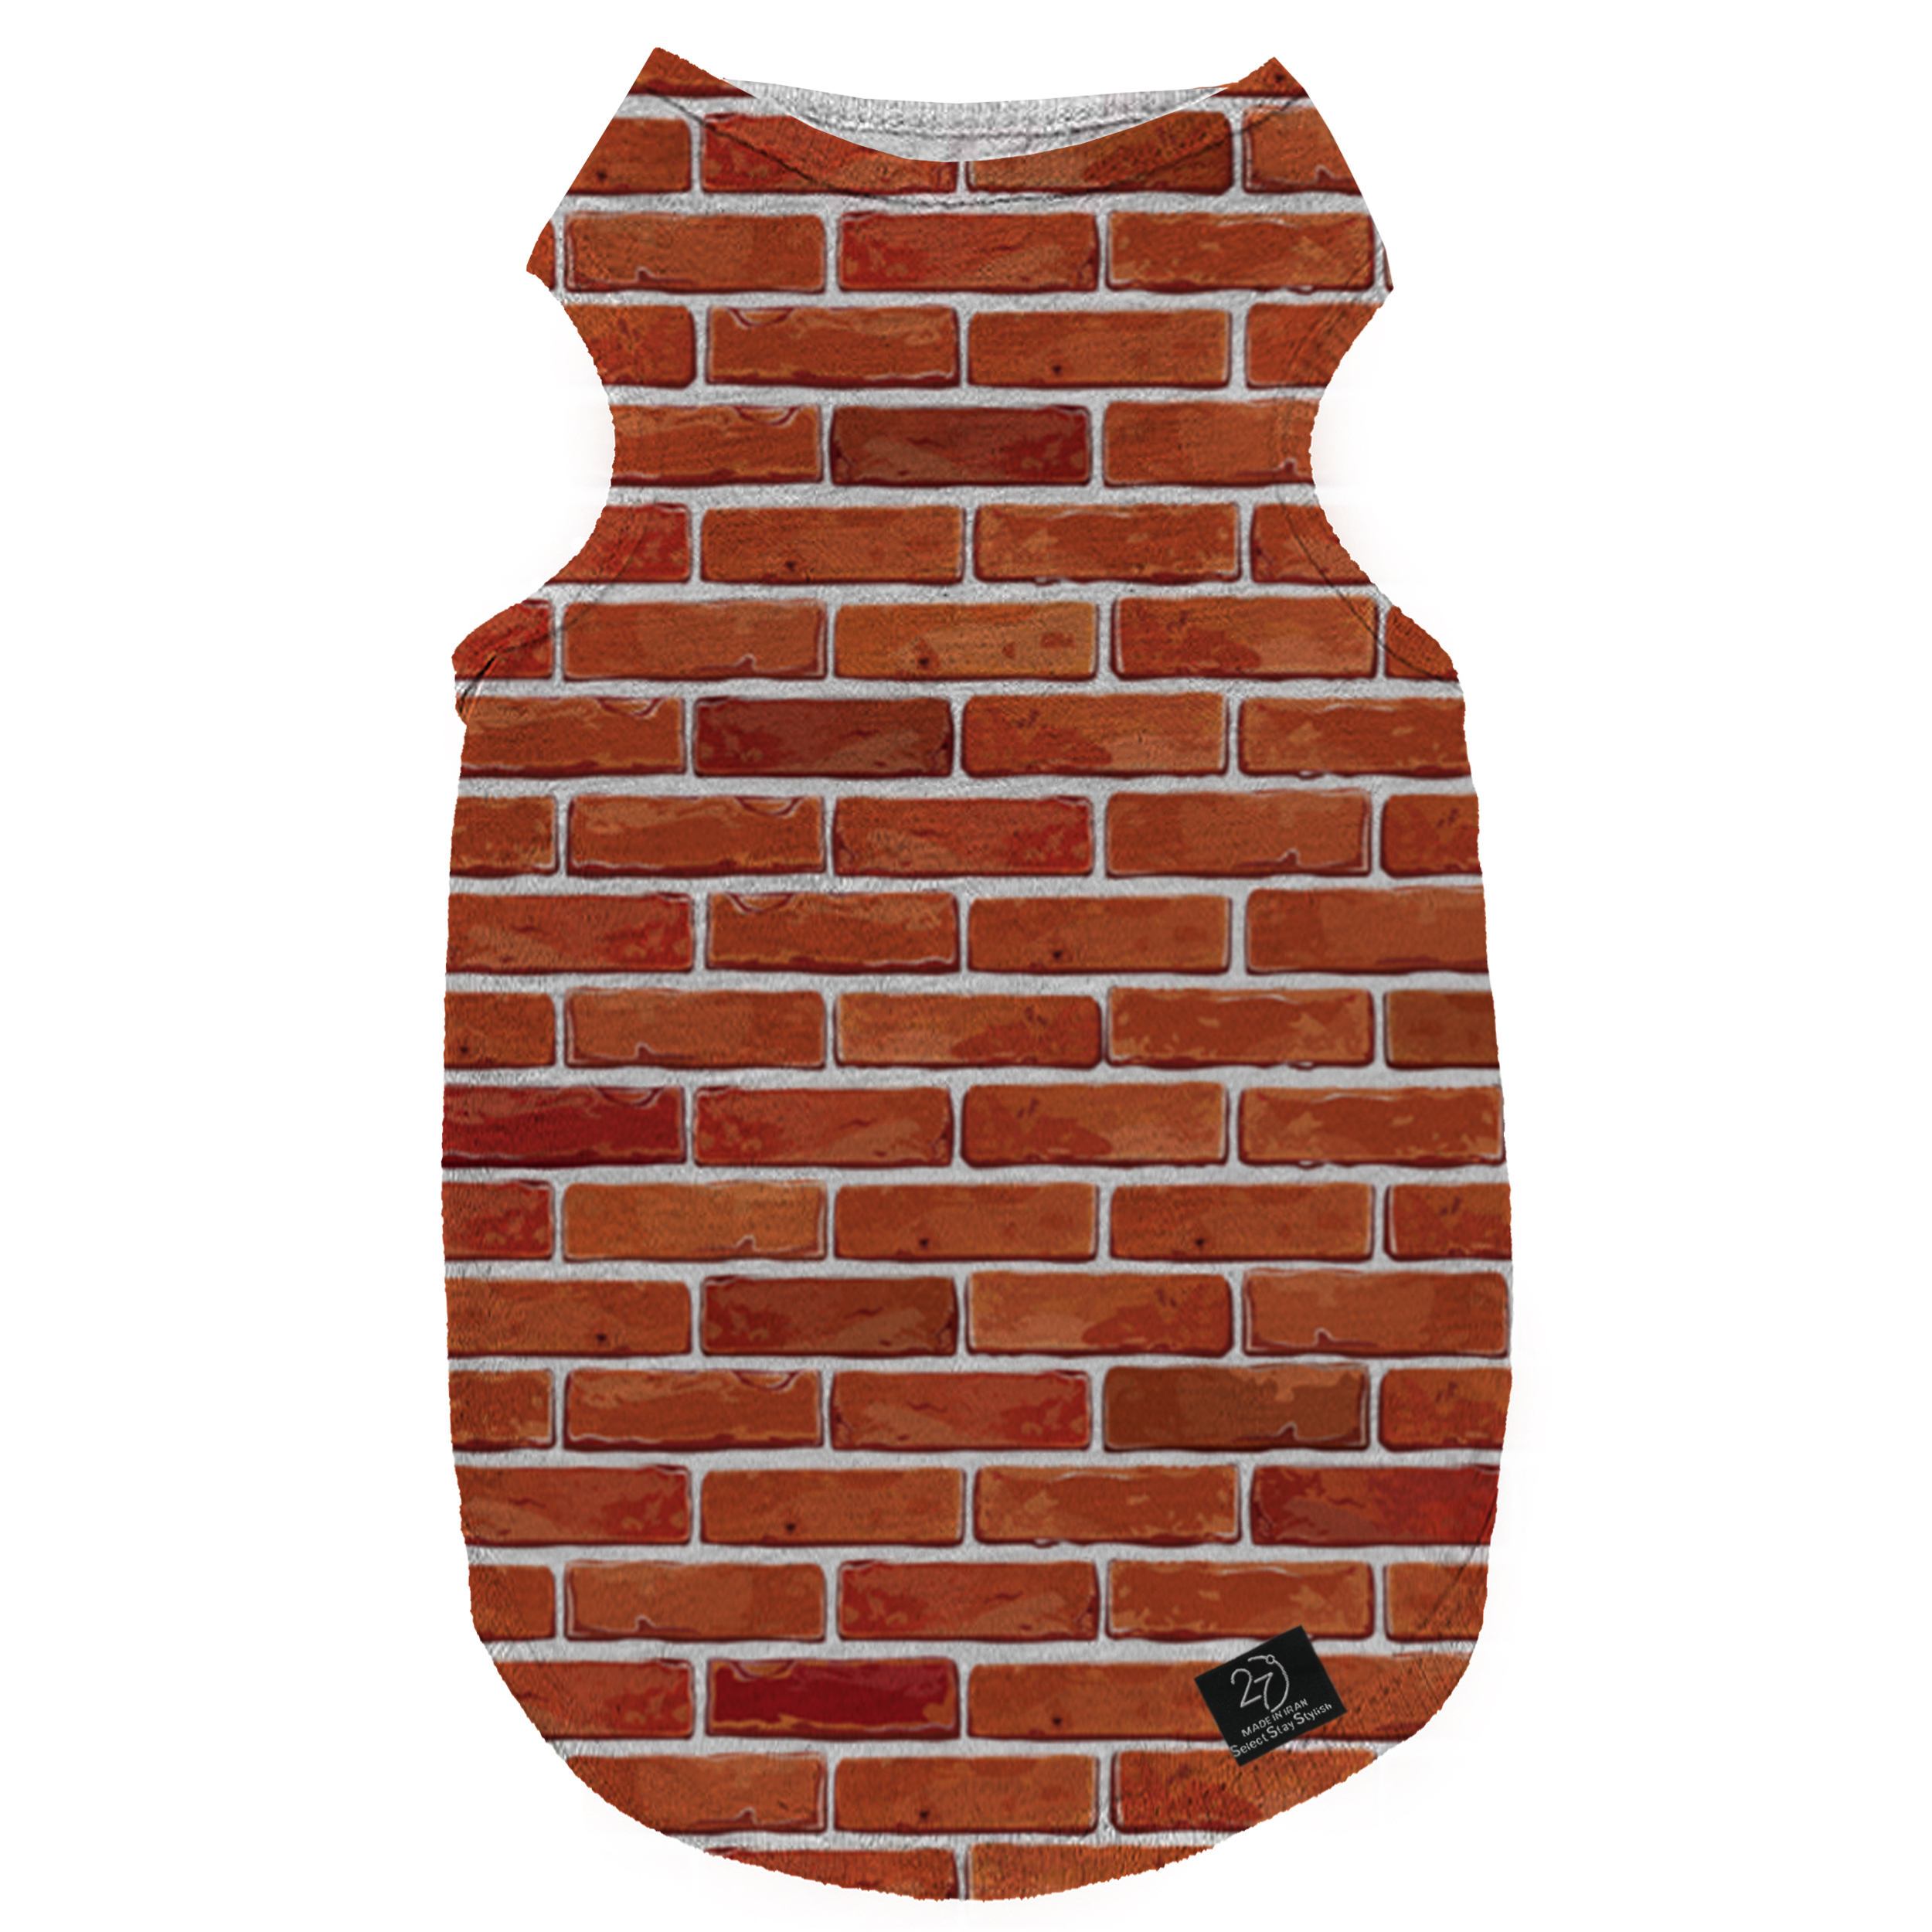 لباس سگ و گربه 27 طرح Red Brick Wall کد MH711 سایز XL